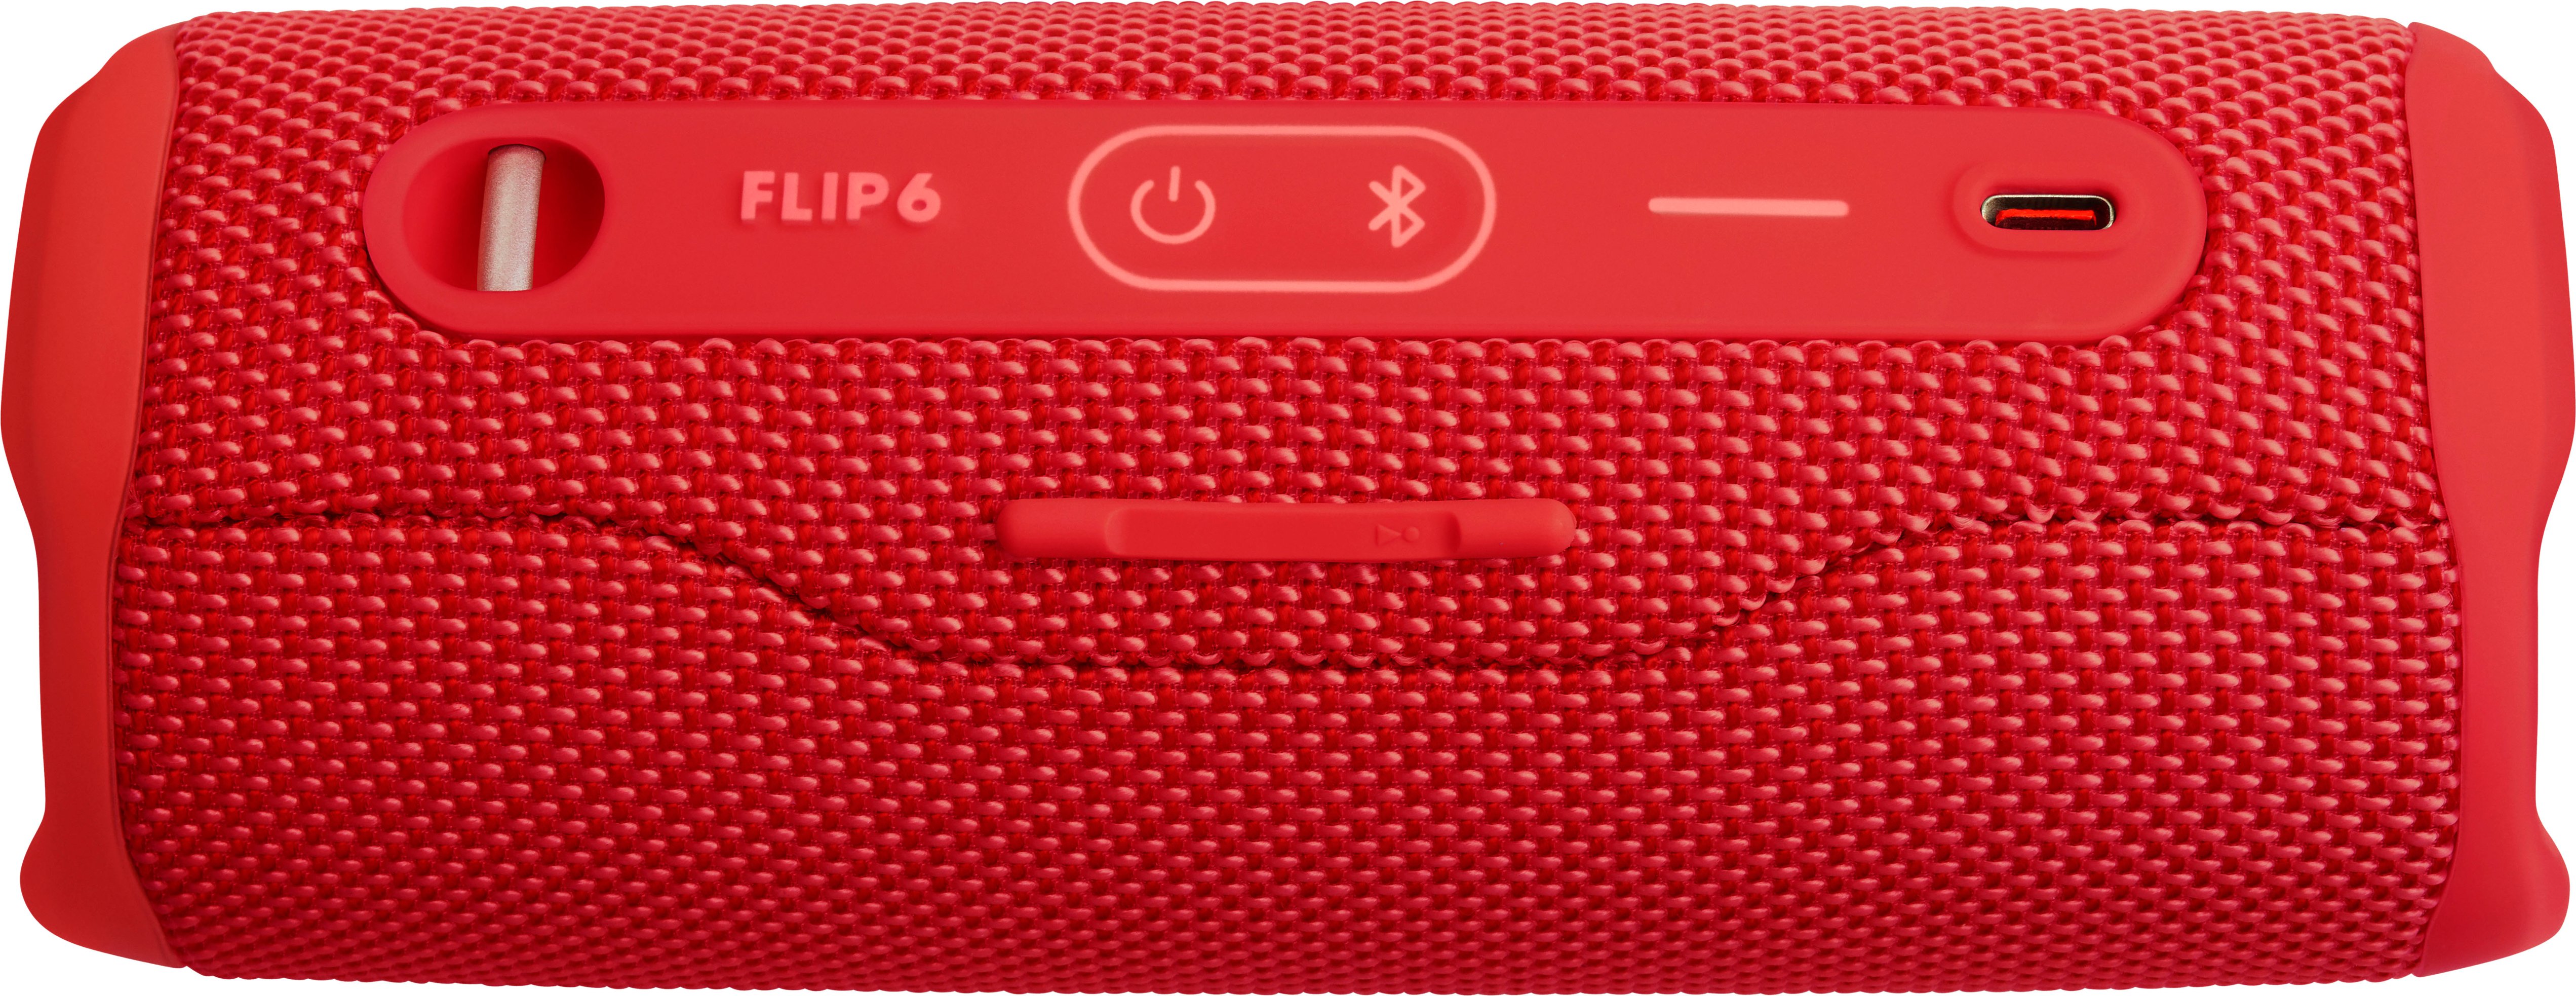 FLIP6 Best - Red JBL Portable JBLFLIP6REDAM Buy Waterproof Speaker